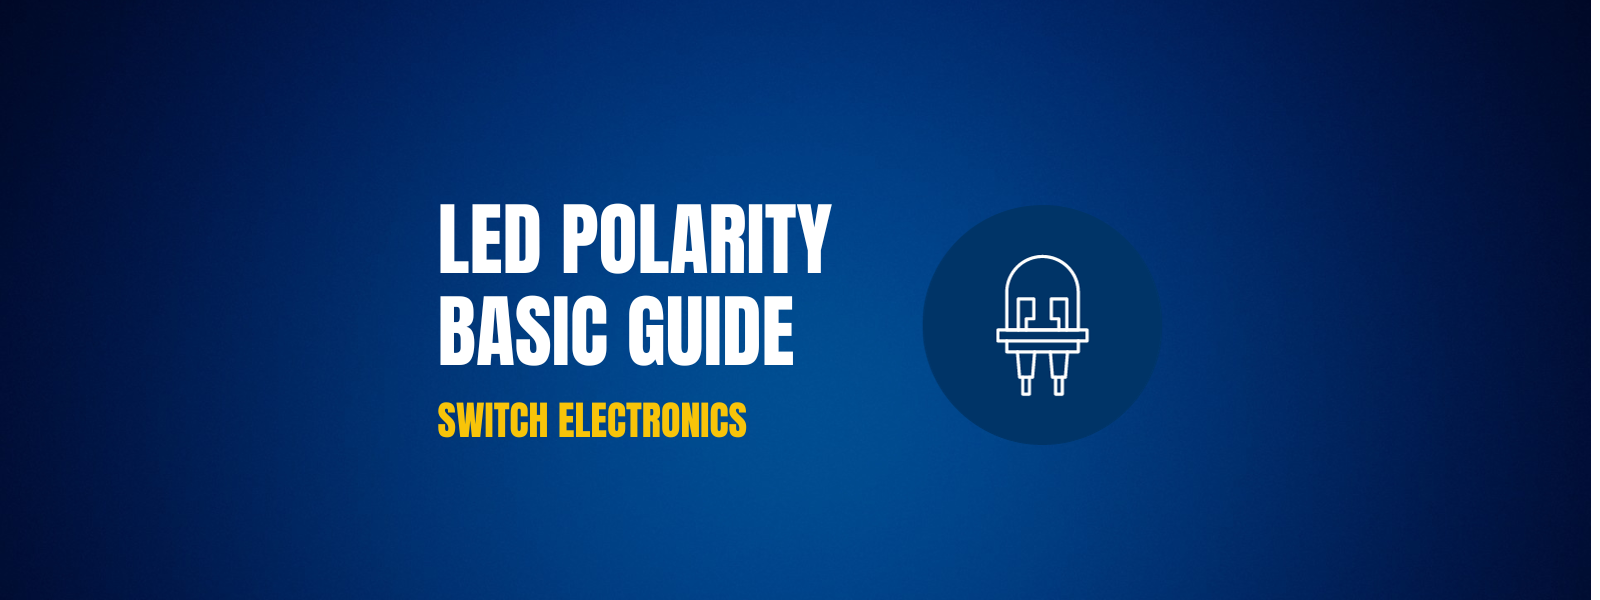 Image banner for LED polarity basic guide